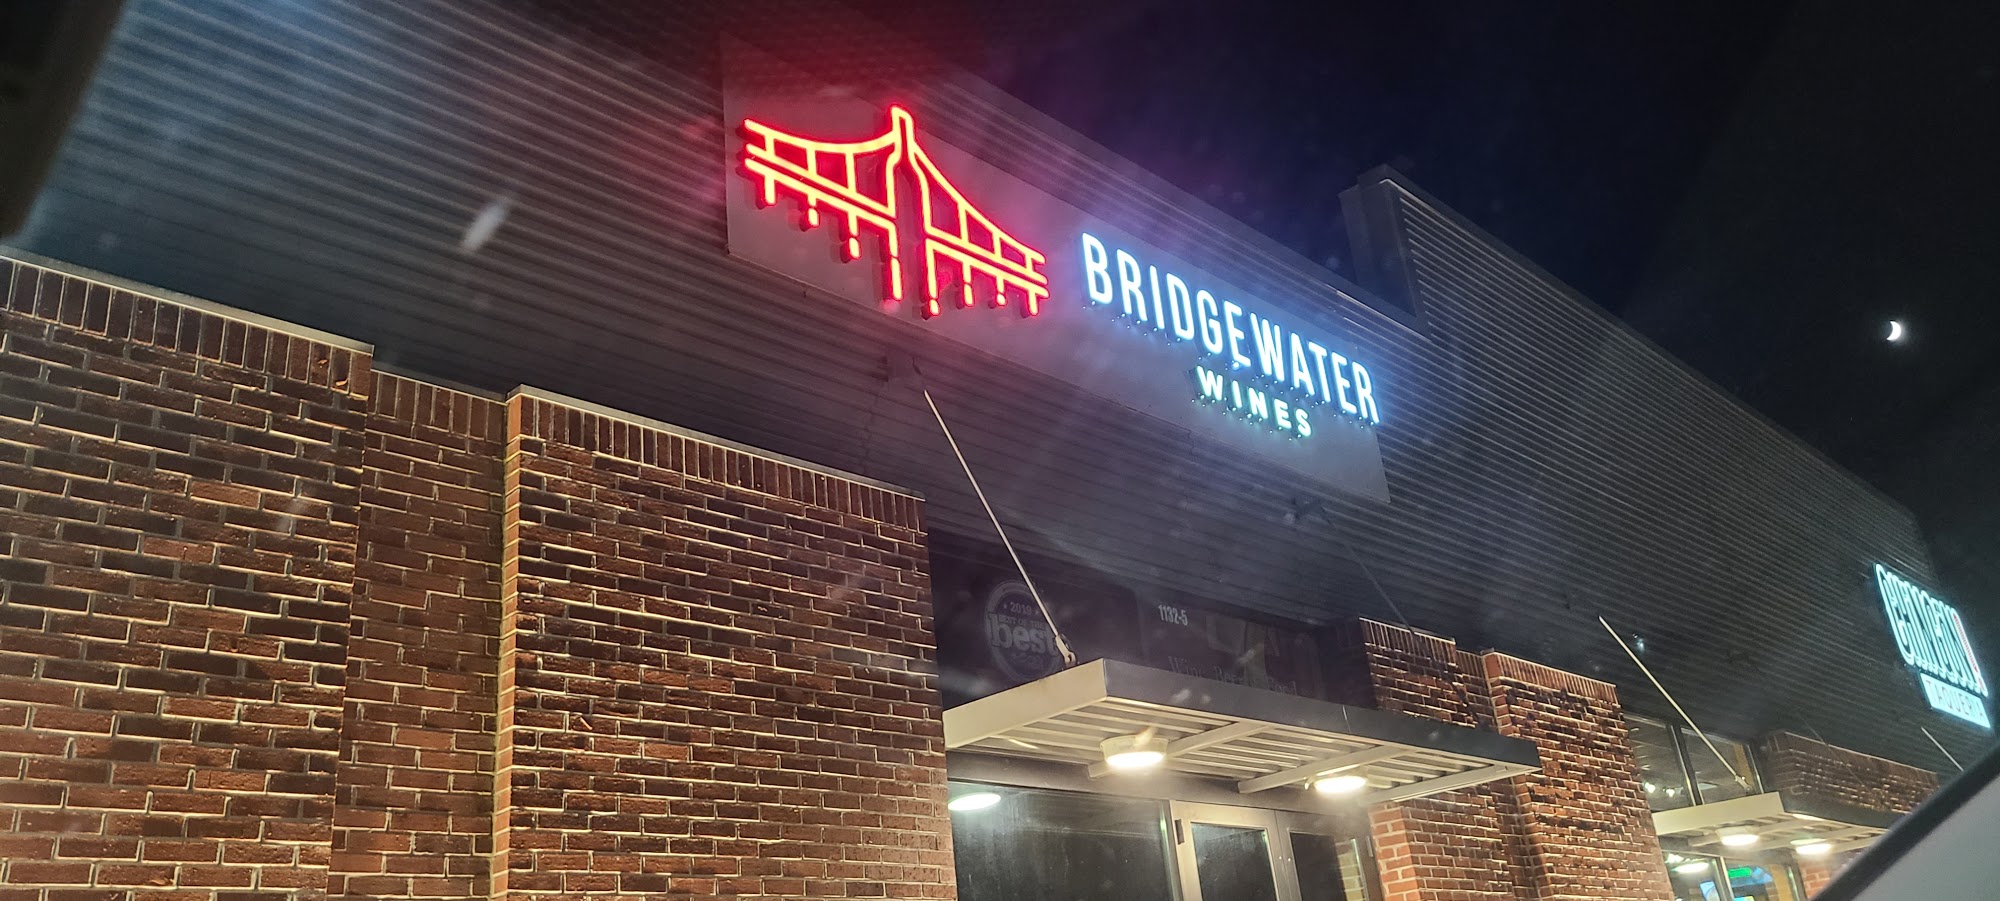 Bridgewater Wines+Dines